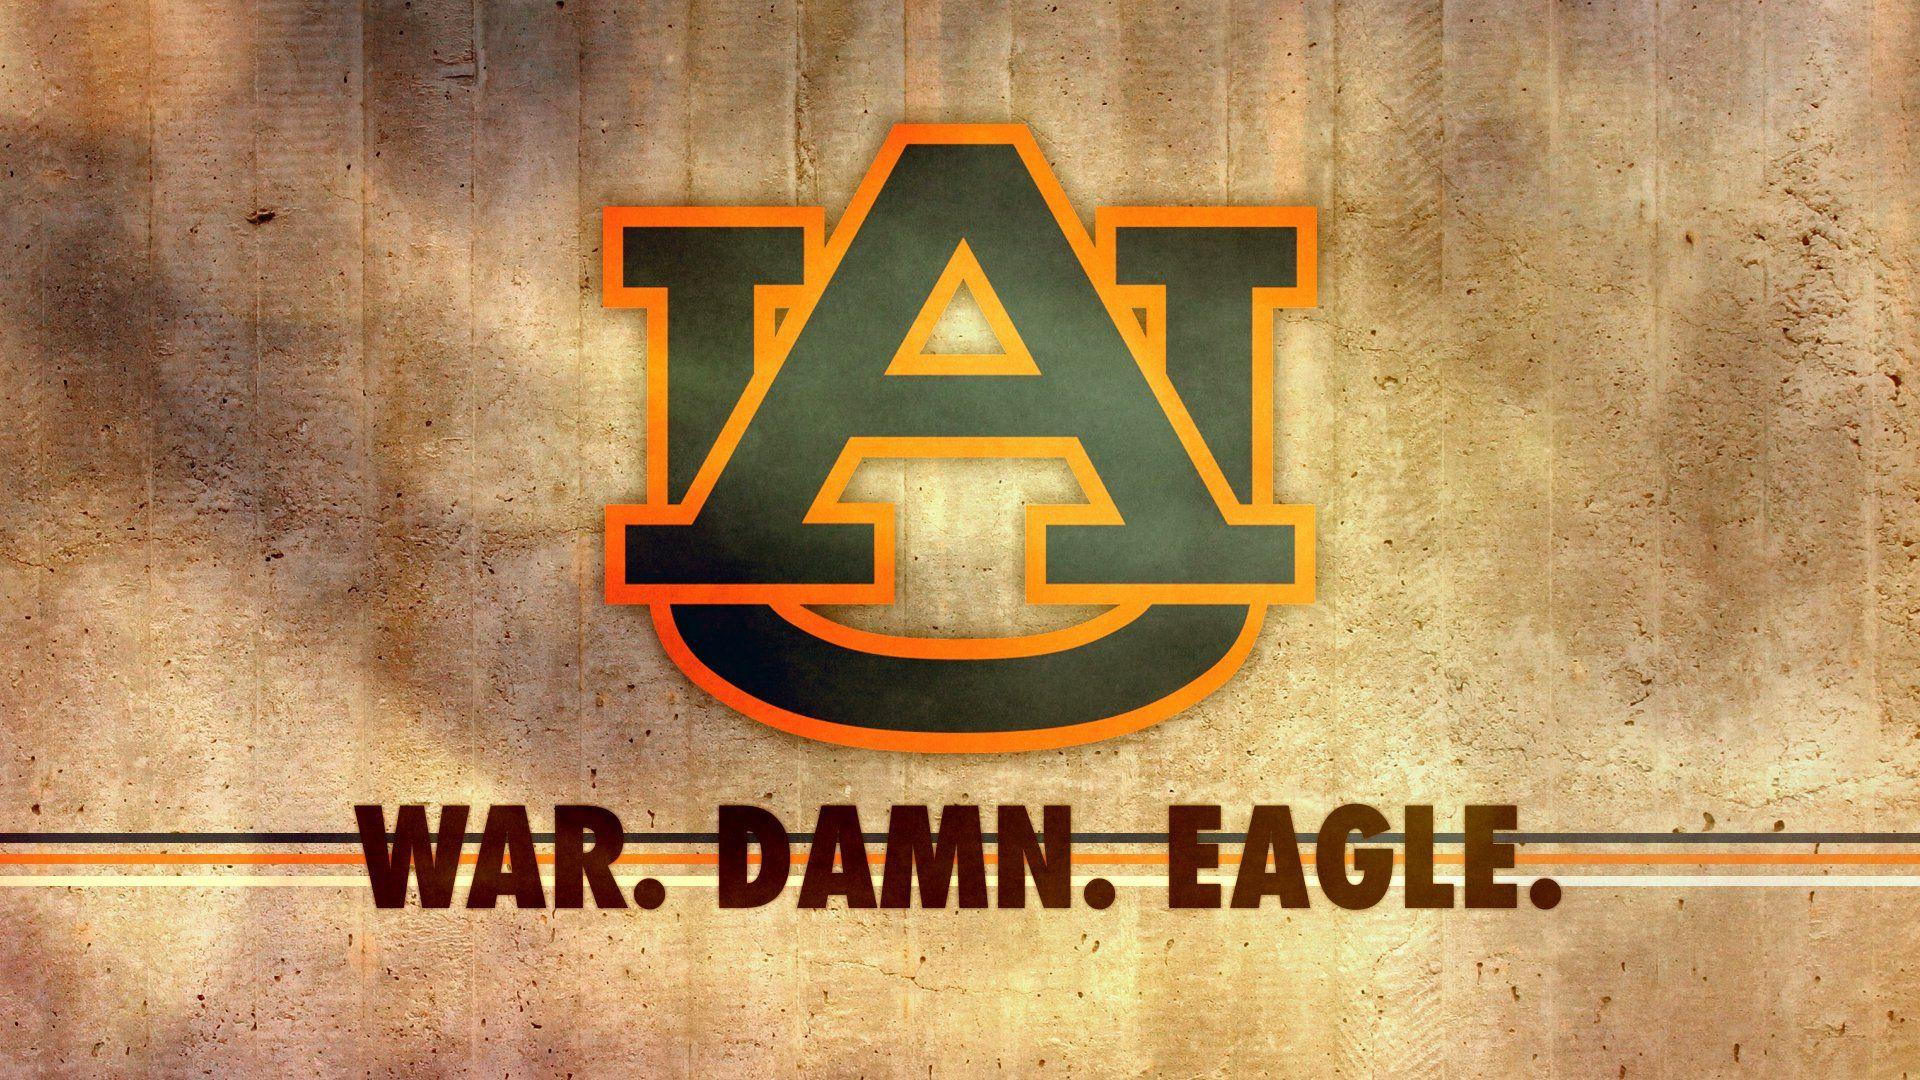 Wallpaper.wiki Auburn Tigers Football Wallpaper Full HD PIC